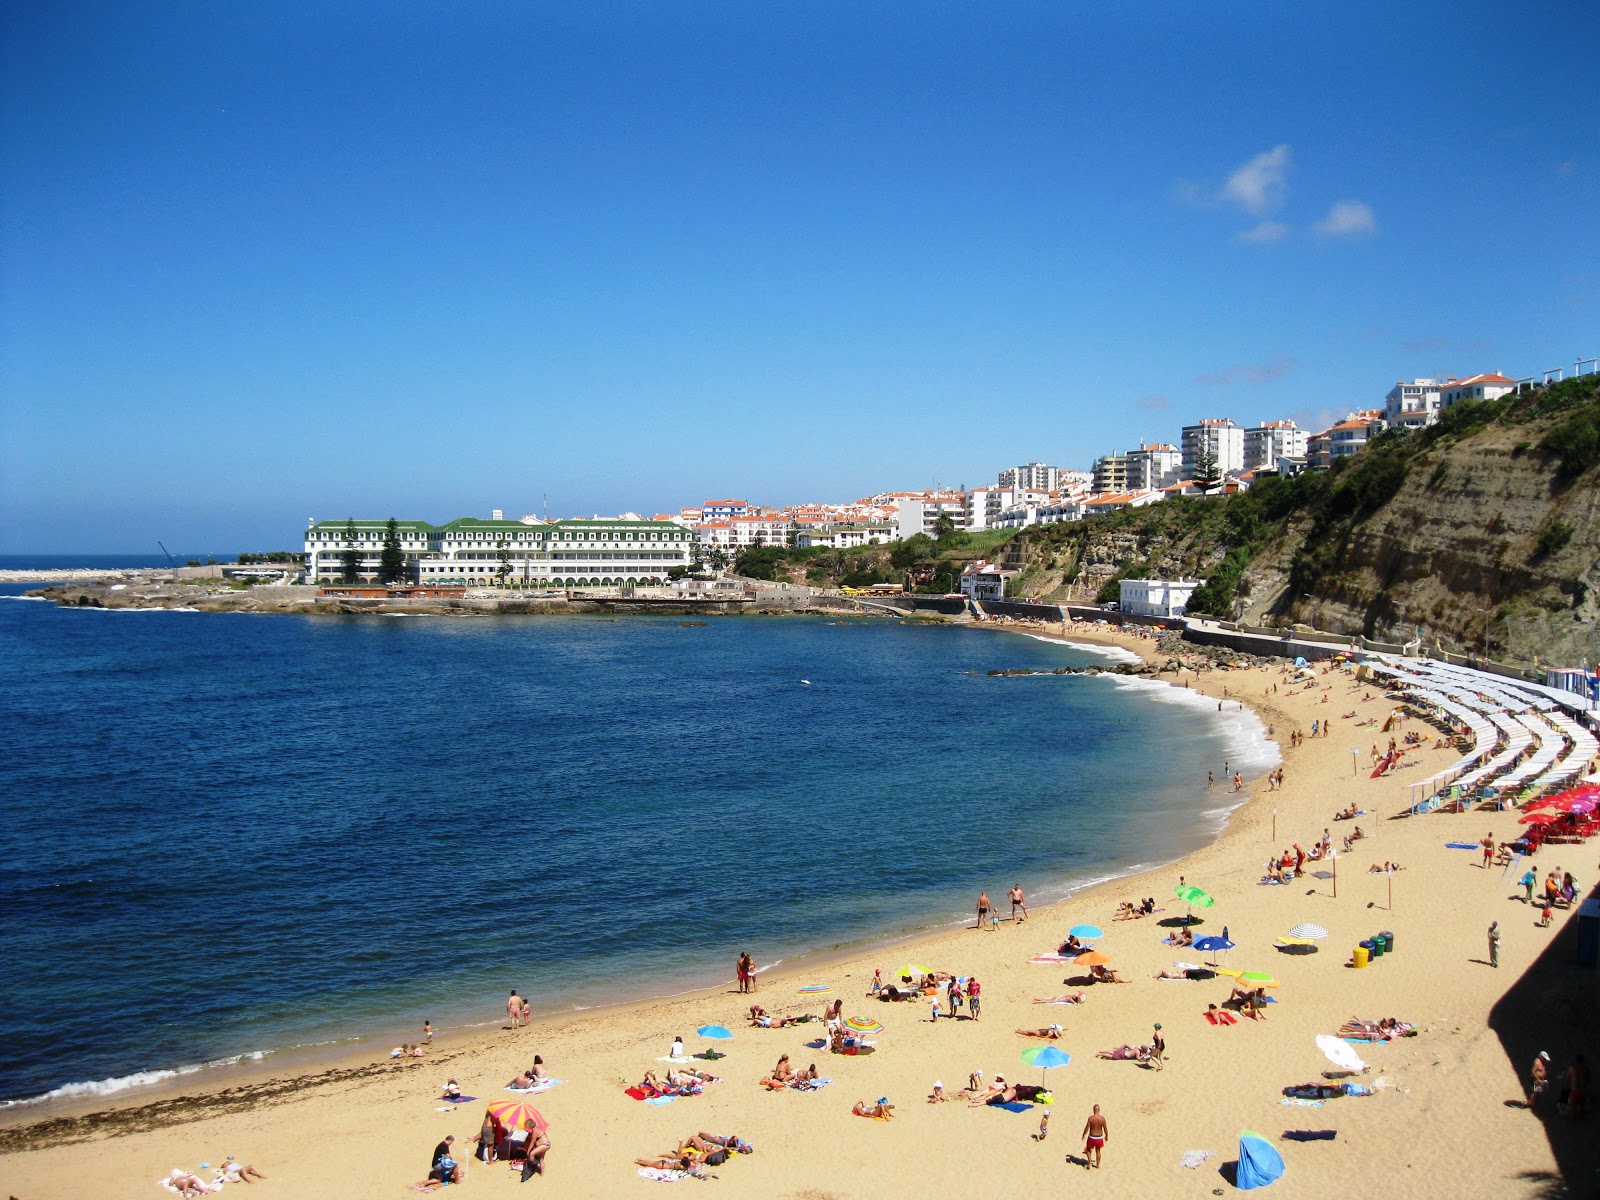 Foto af Praia da Baleia - populært sted blandt afslapningskendere